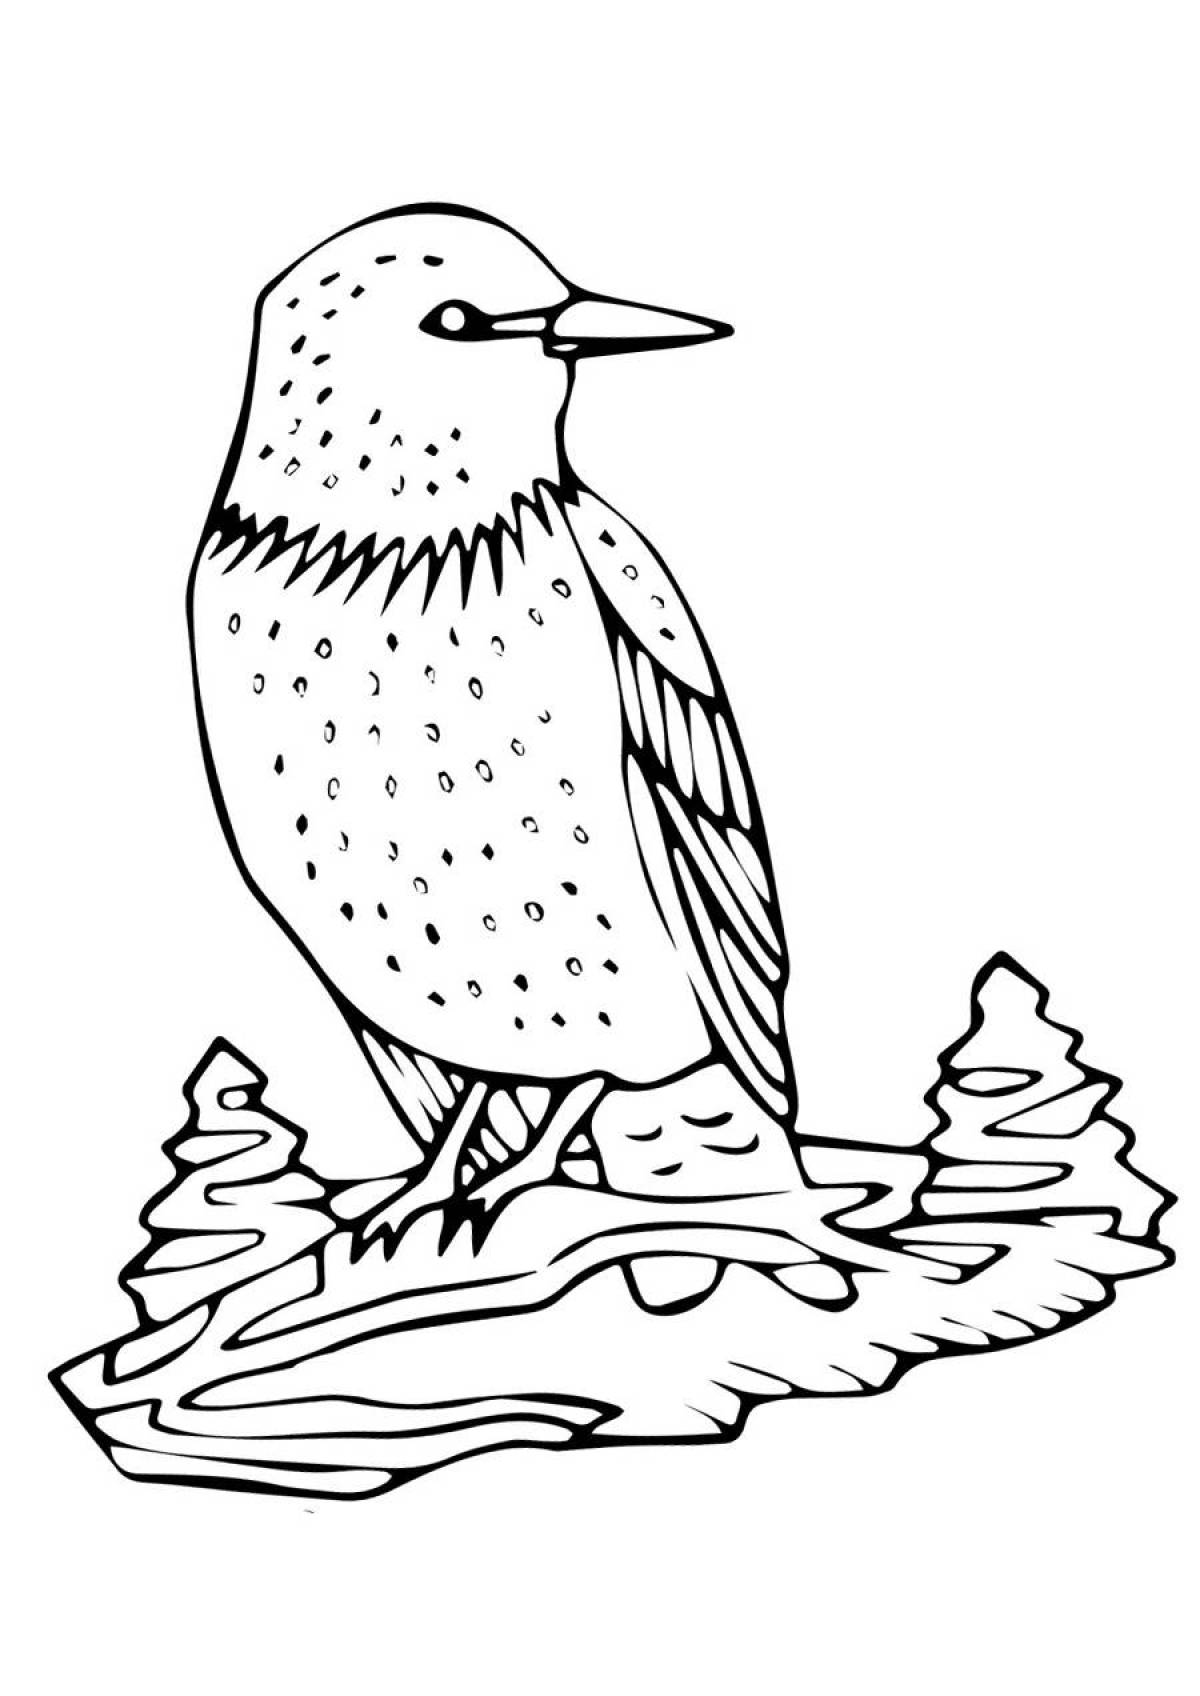 Drawing starling